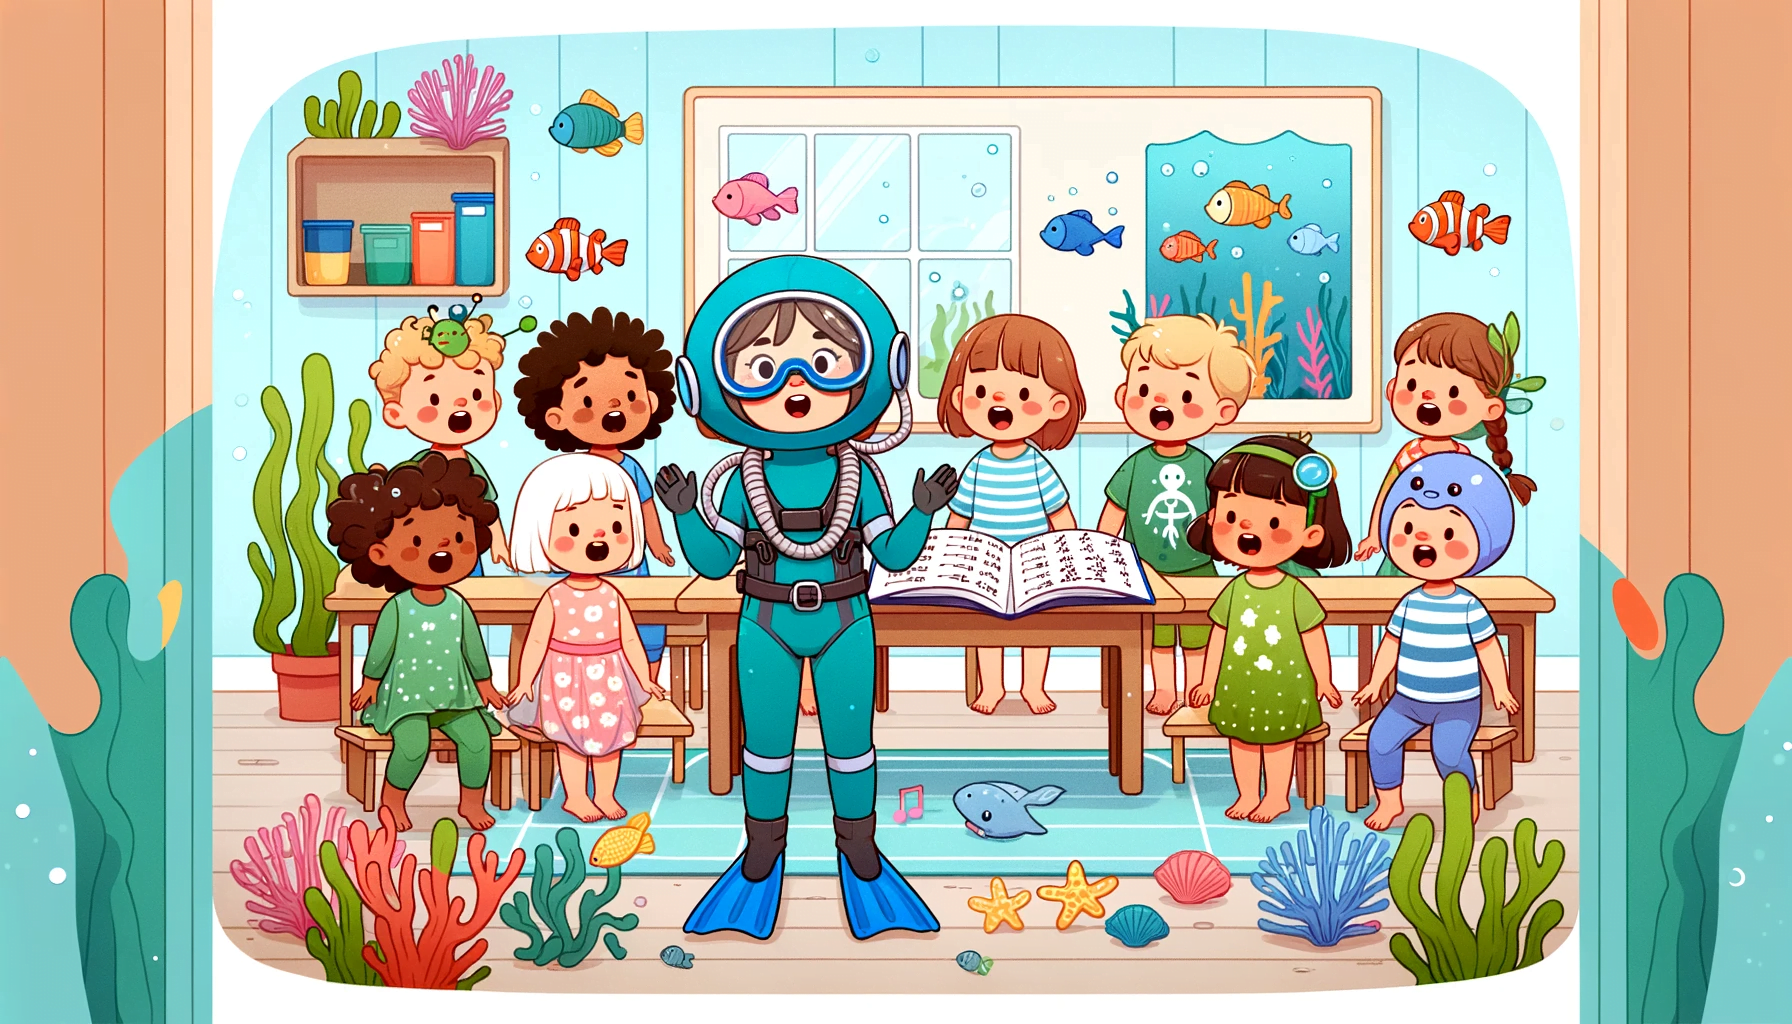 31 Ocean Songs for Preschoolers - Preschool Education